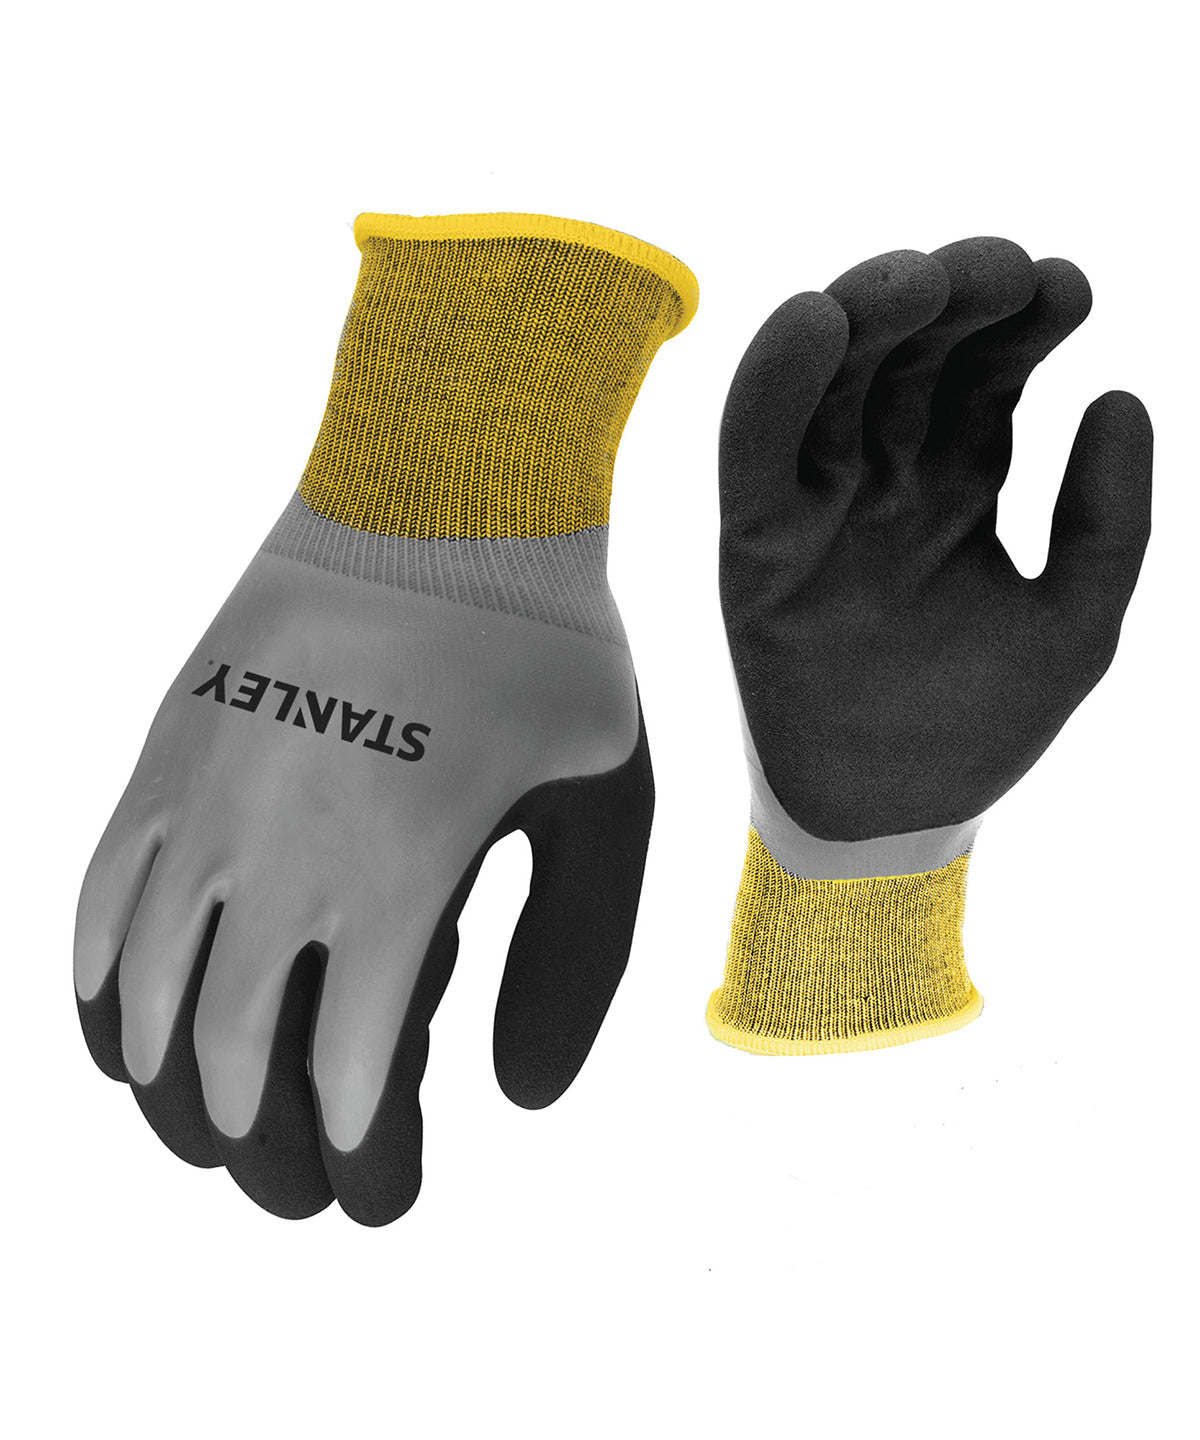 Stanley waterproof grip gloves